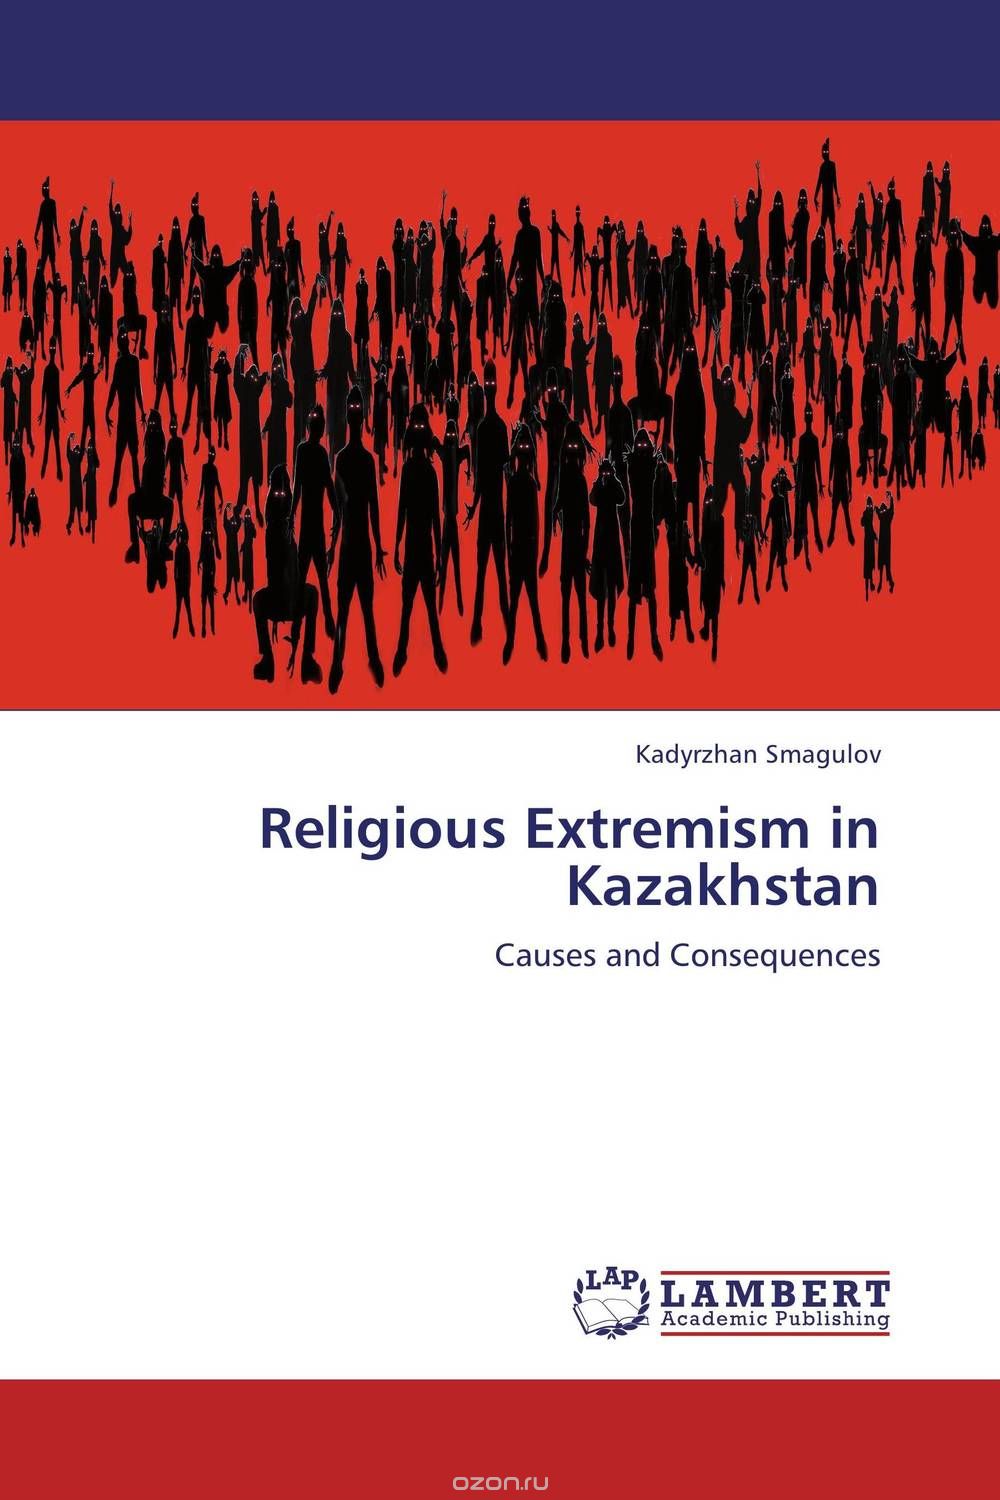 Скачать книгу "Religious Extremism in Kazakhstan"